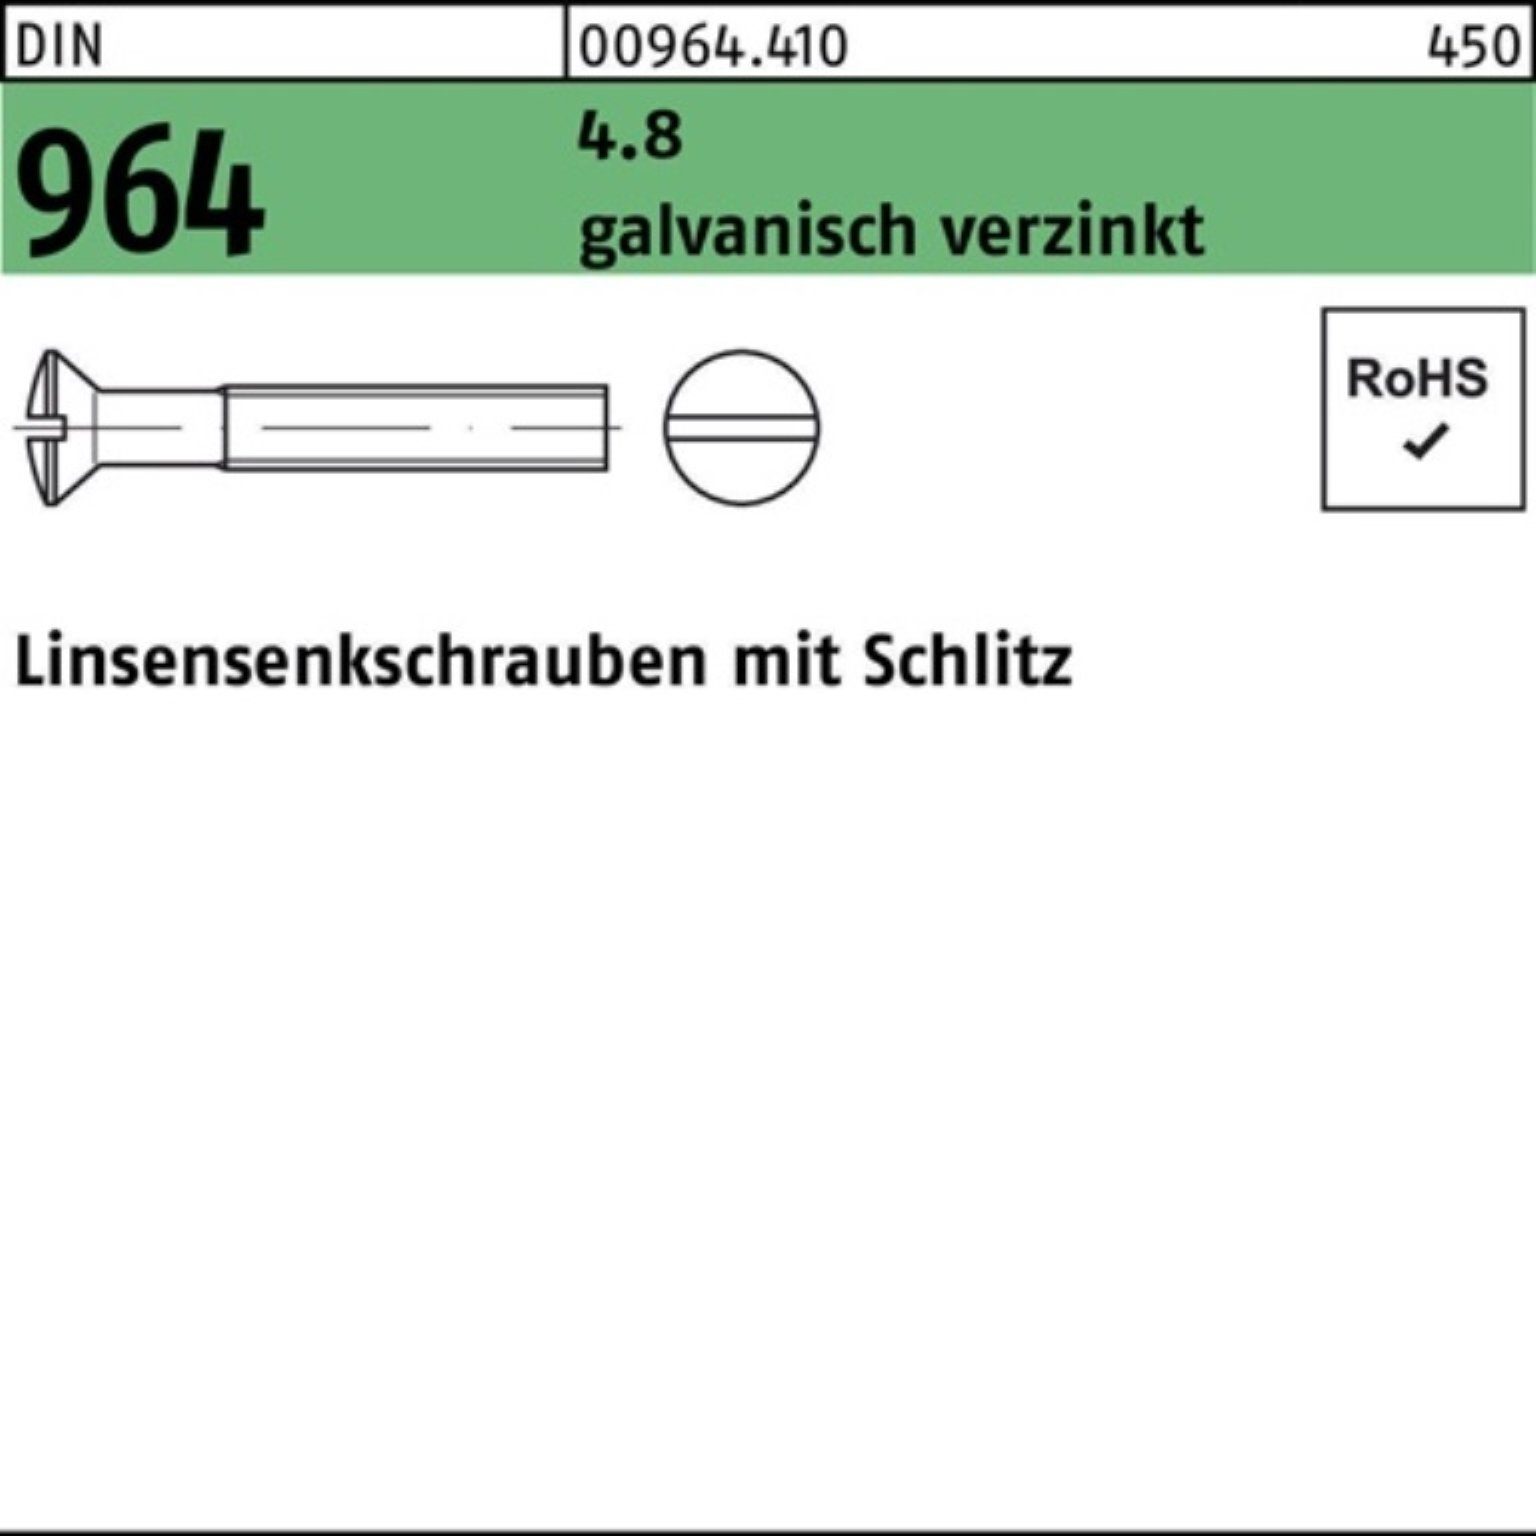 Reyher Linsenschraube 200er M5x 4.8 DIN 40 964 Linsensenkschraube Schlitz galv.verz. Pack 20